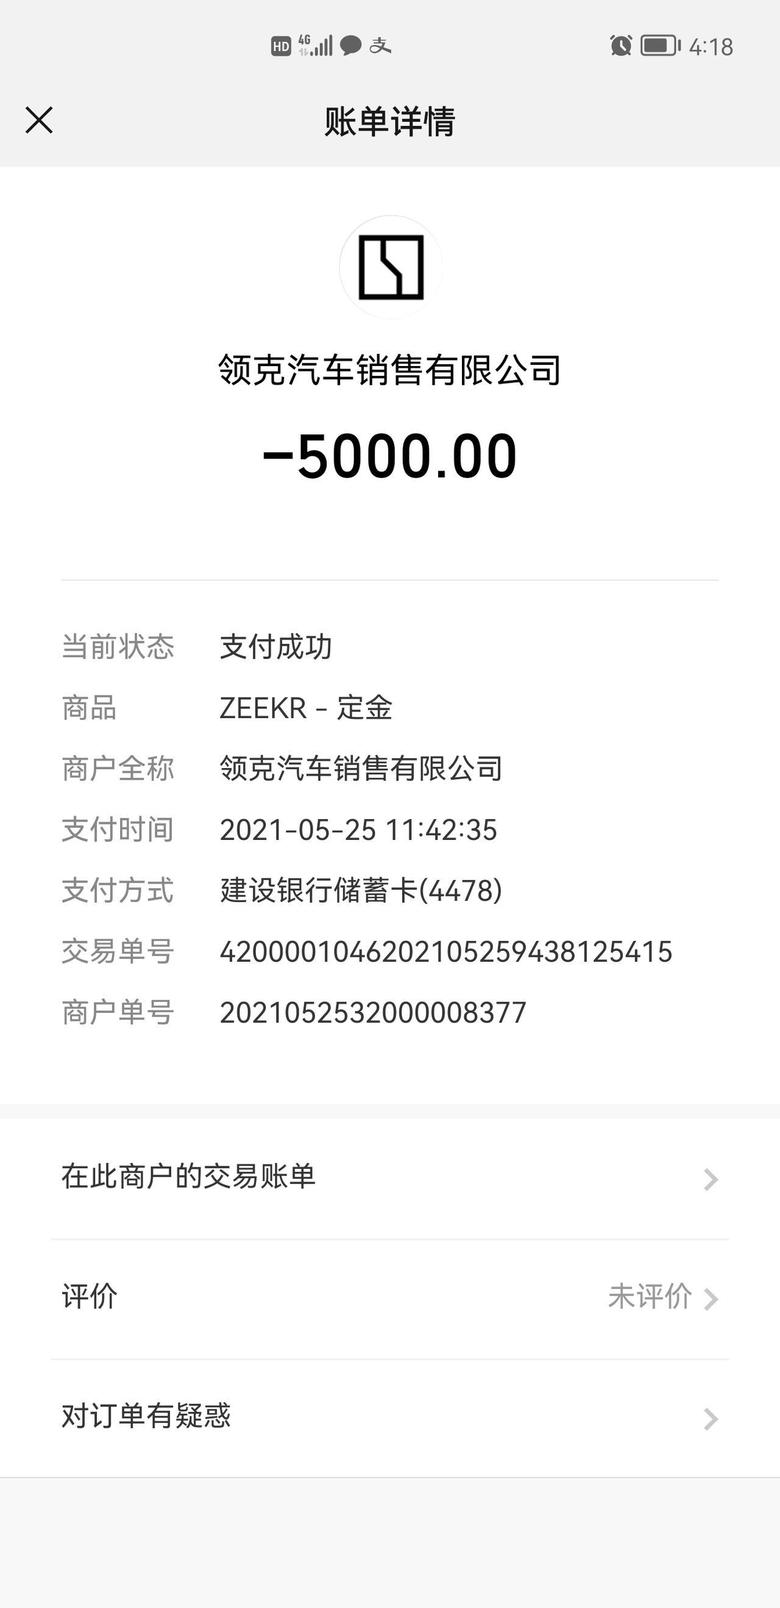 zeekr 001 5.25大定的we版，西安地区可以当面交易。现在app和小程序看不到订单，怕狗咬我，截图支付记录为证